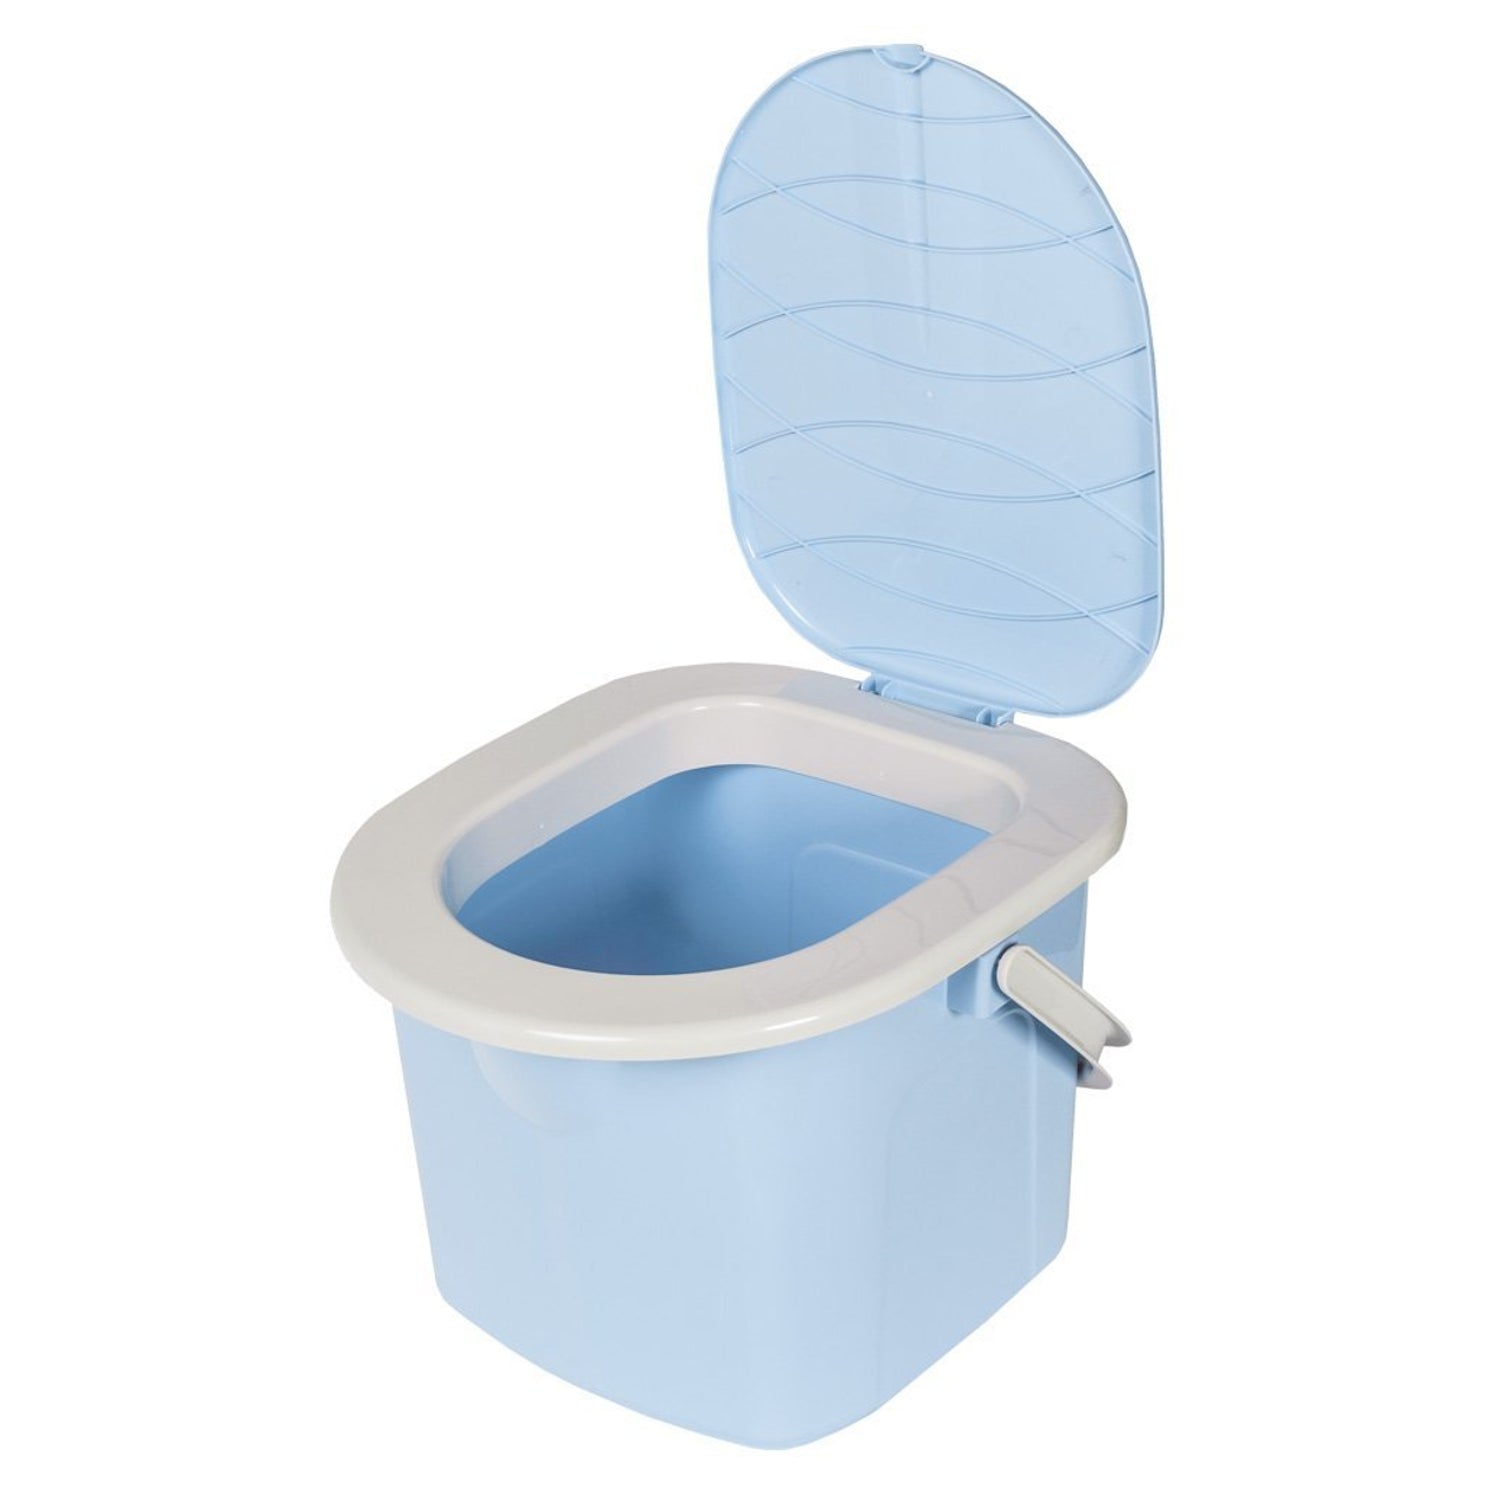 Toilettes de camping robustes et étanches toilettes portables pour